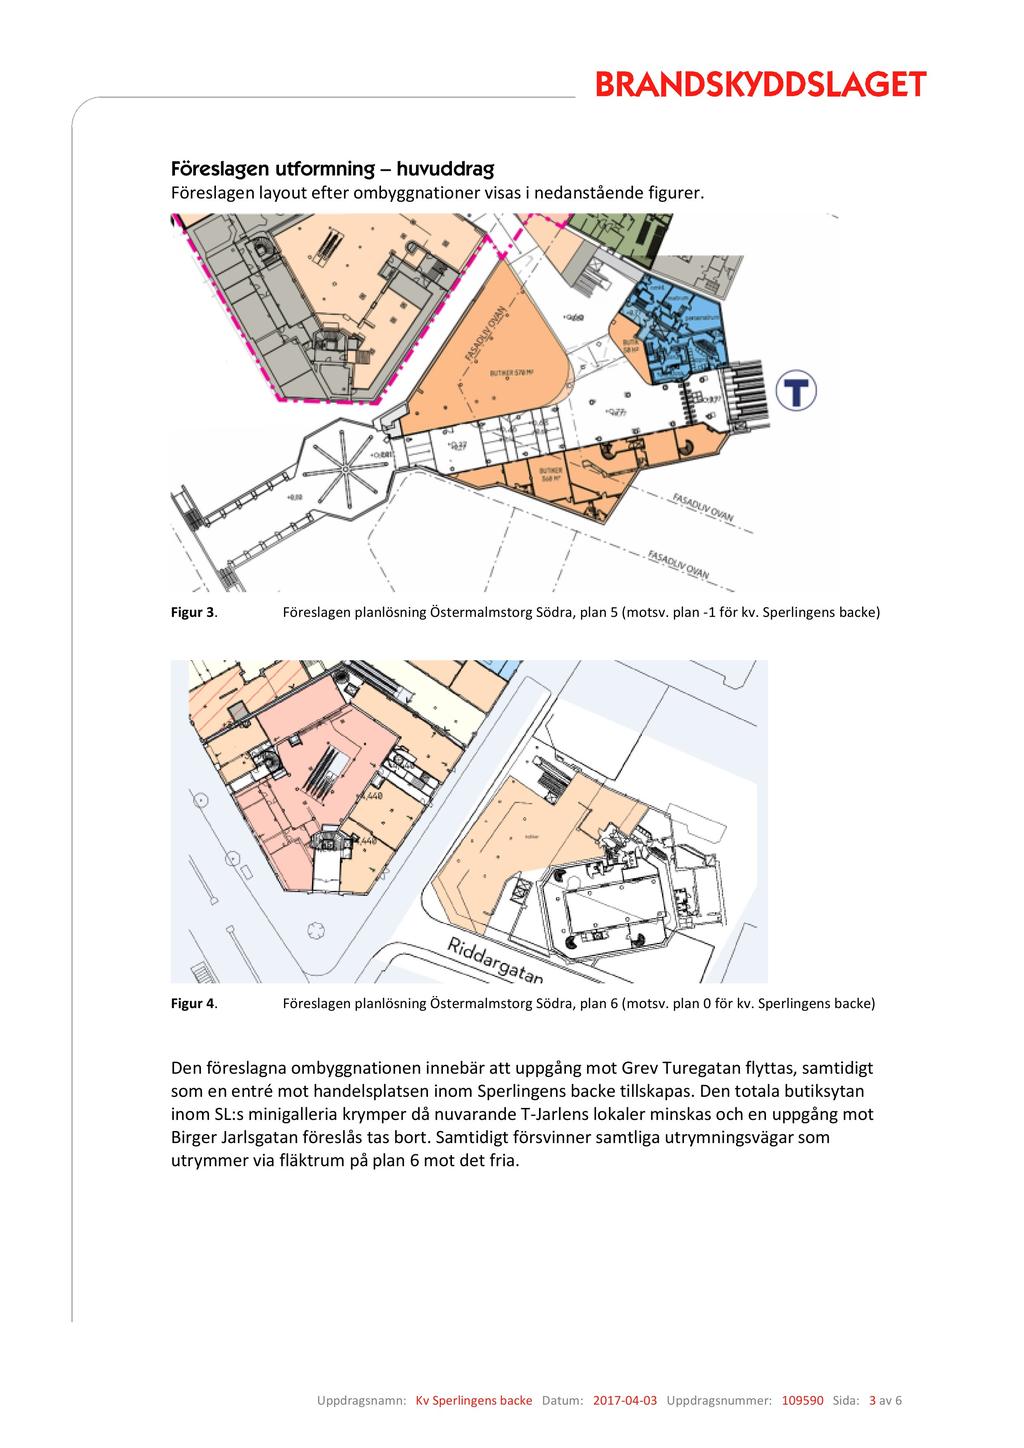 Föreslagen utformning huvuddrag Föreslagen layout efter ombyggnationer visas i neda nstående figurer. Figur 3. Föreslagen planlösning Östermalmstorg Södra, pla n 5 (motsv. plan -1 för kv.